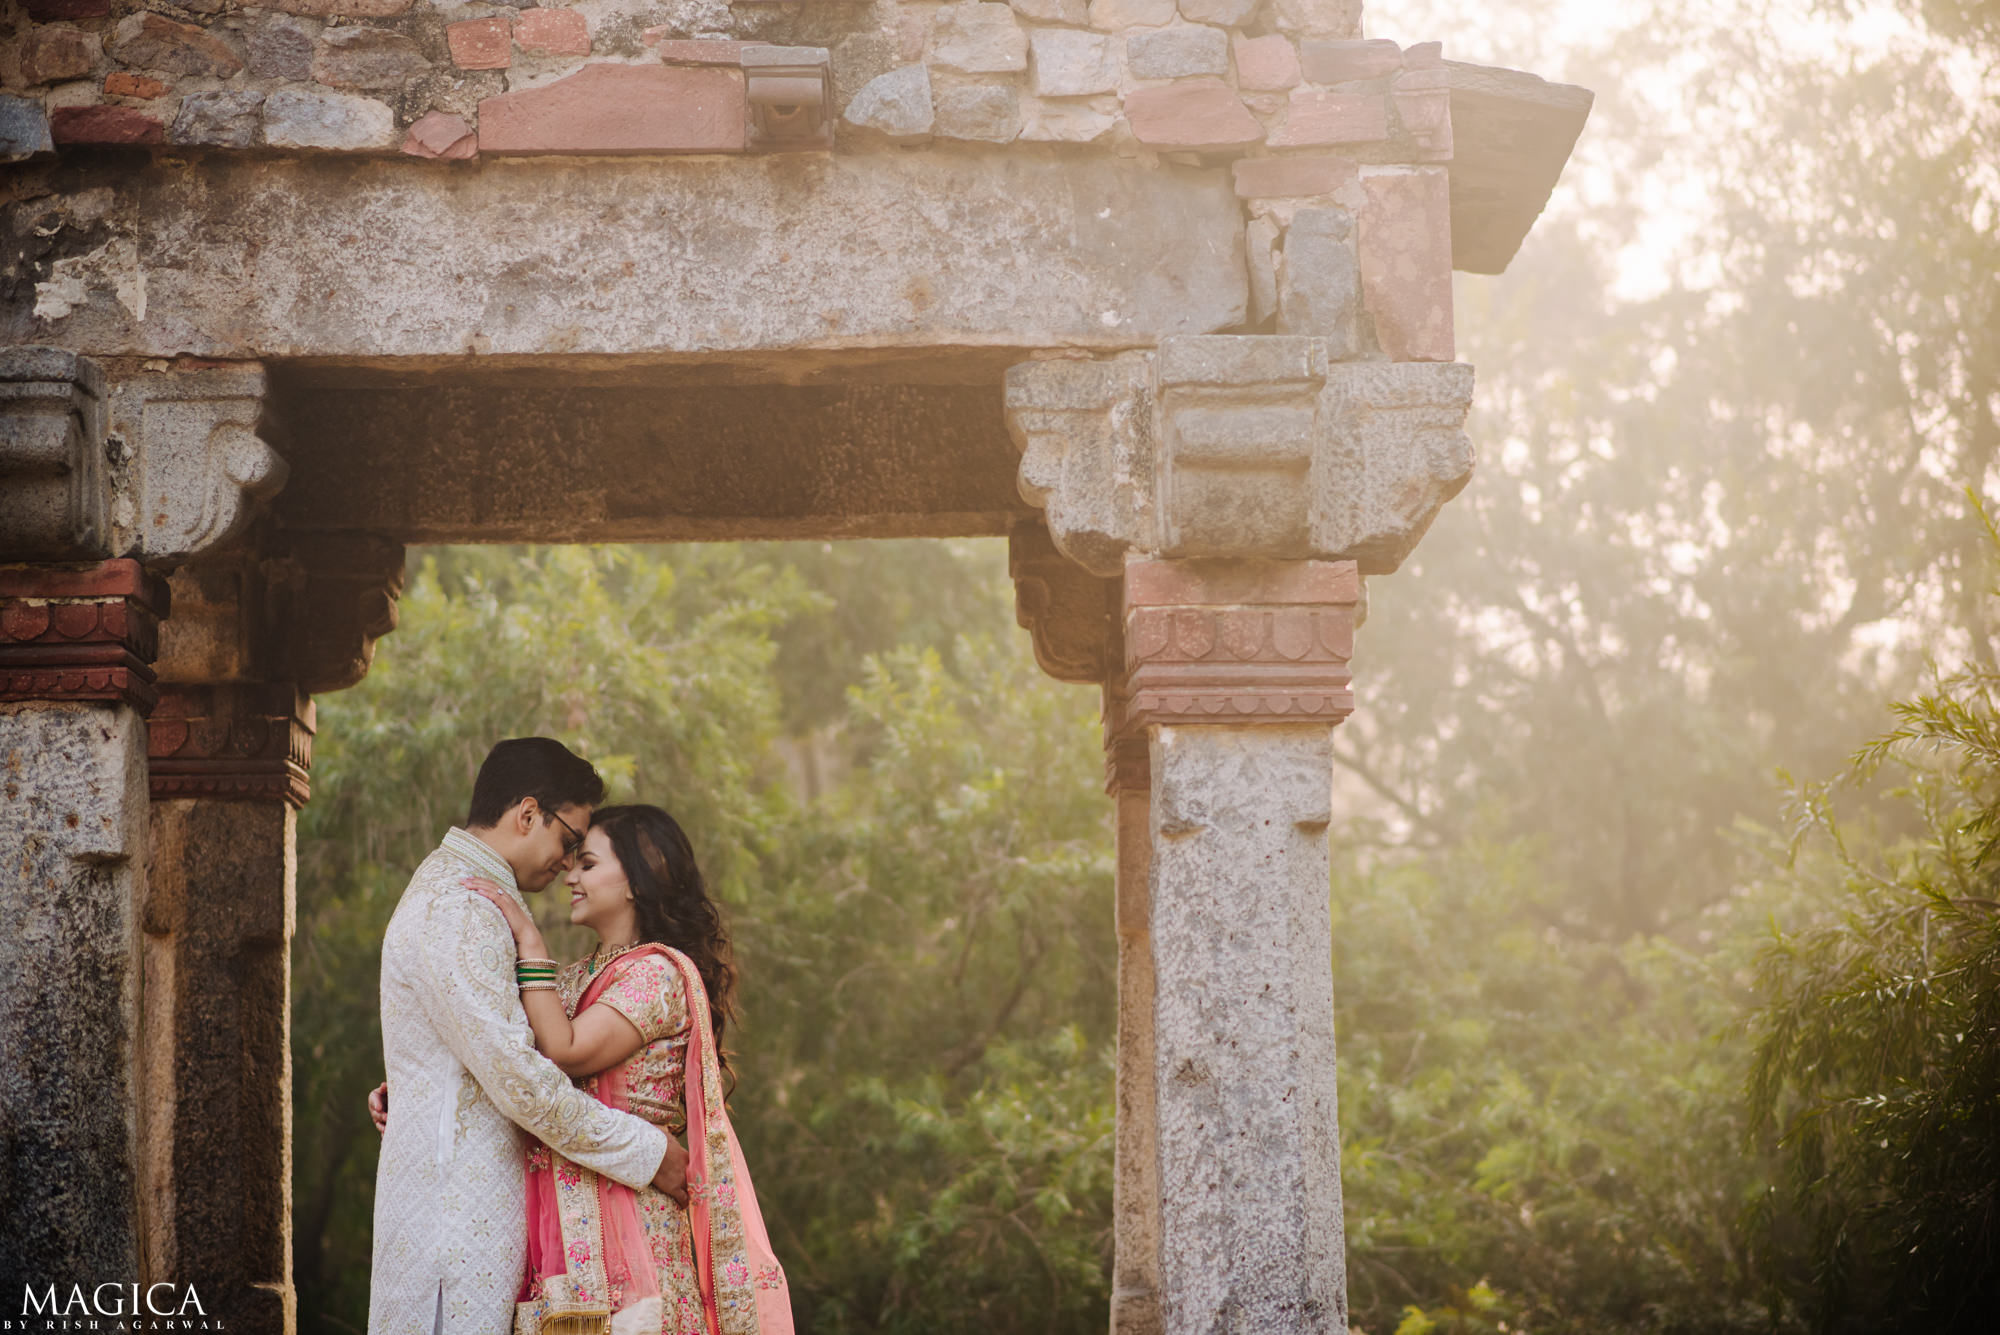 Best Pre Wedding Photographer in Delhi NCR Rish Agarwal